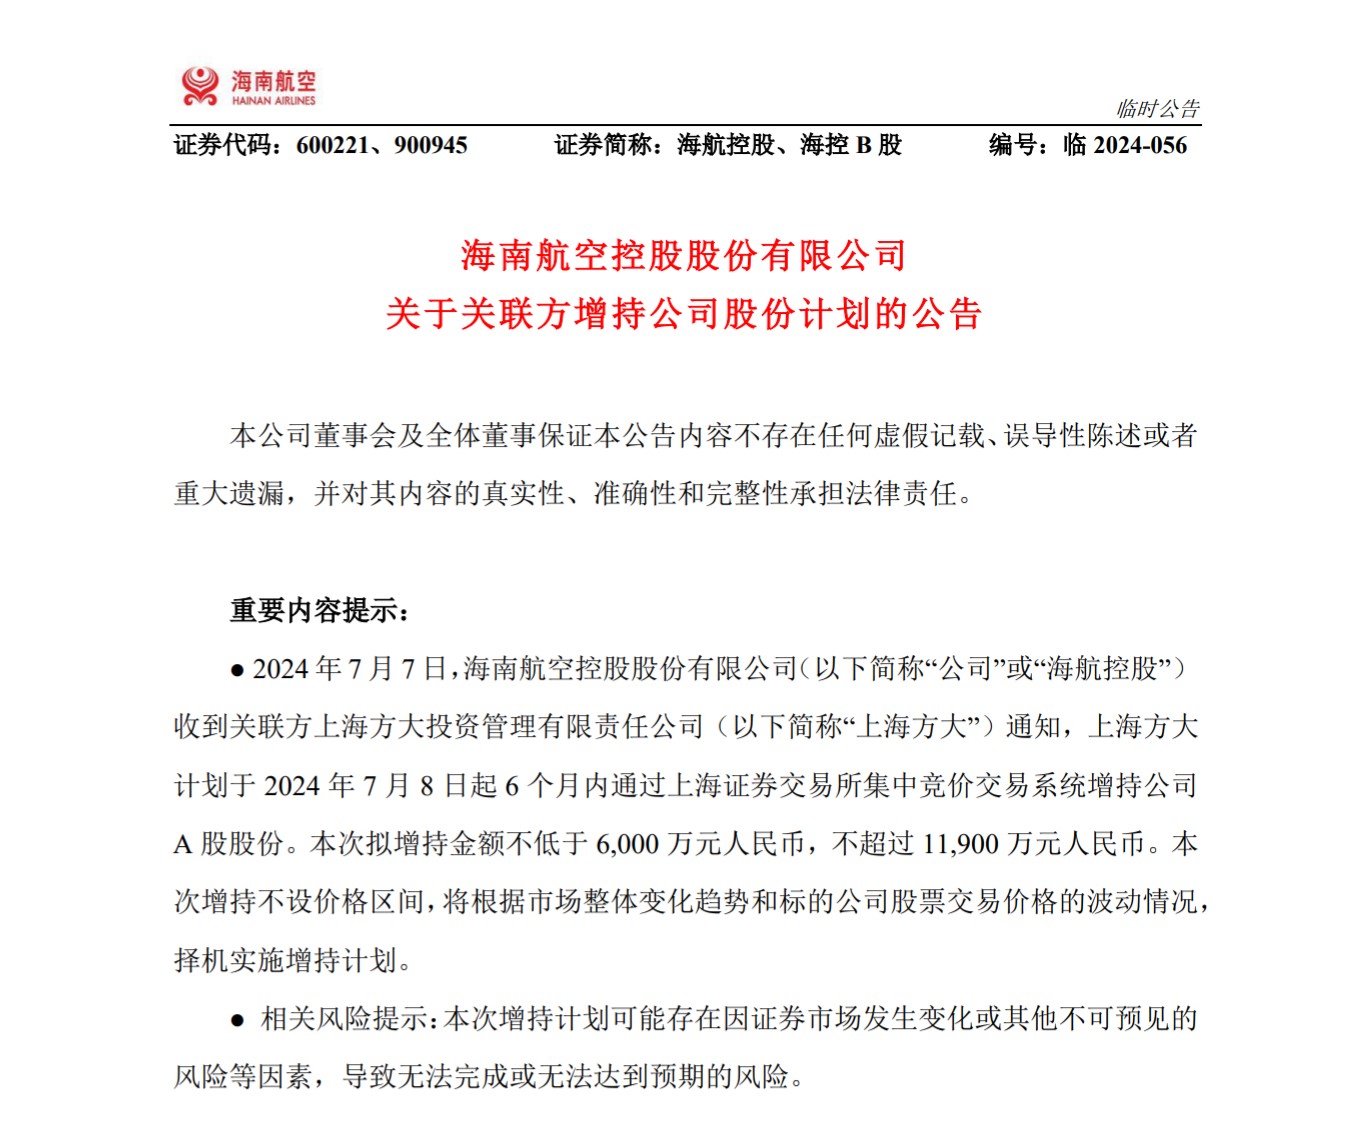 上海方大拟斥资0.6亿元至1.19亿元增持海航控股股份